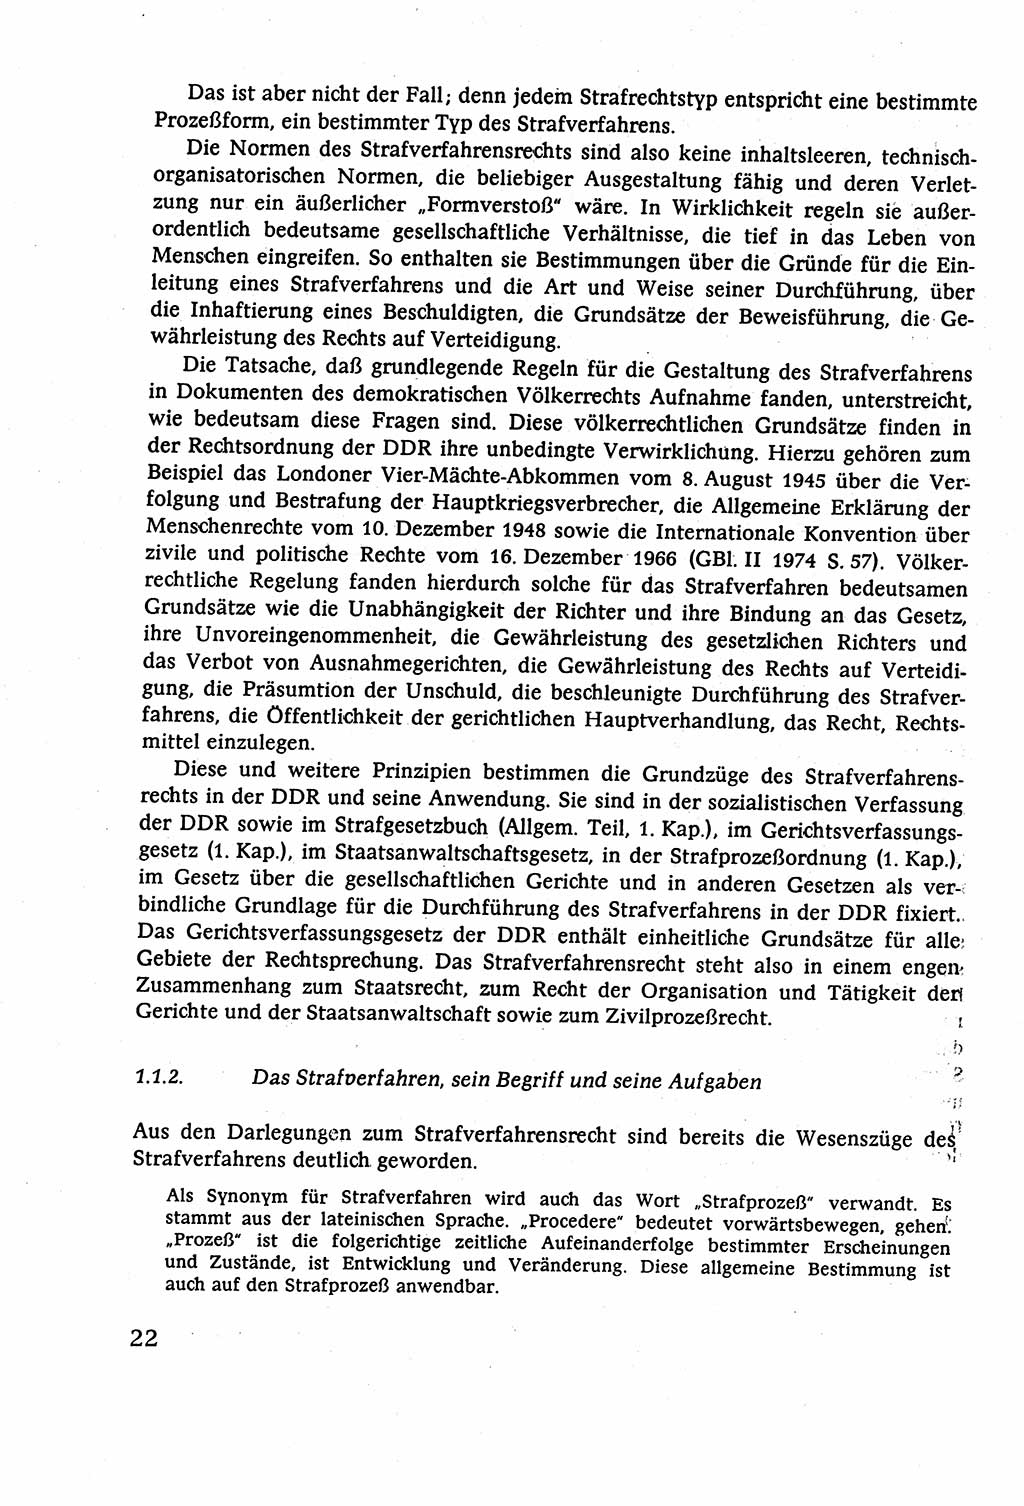 Strafverfahrensrecht [Deutsche Demokratische Republik (DDR)], Lehrbuch 1977, Seite 22 (Strafverf.-R. DDR Lb. 1977, S. 22)